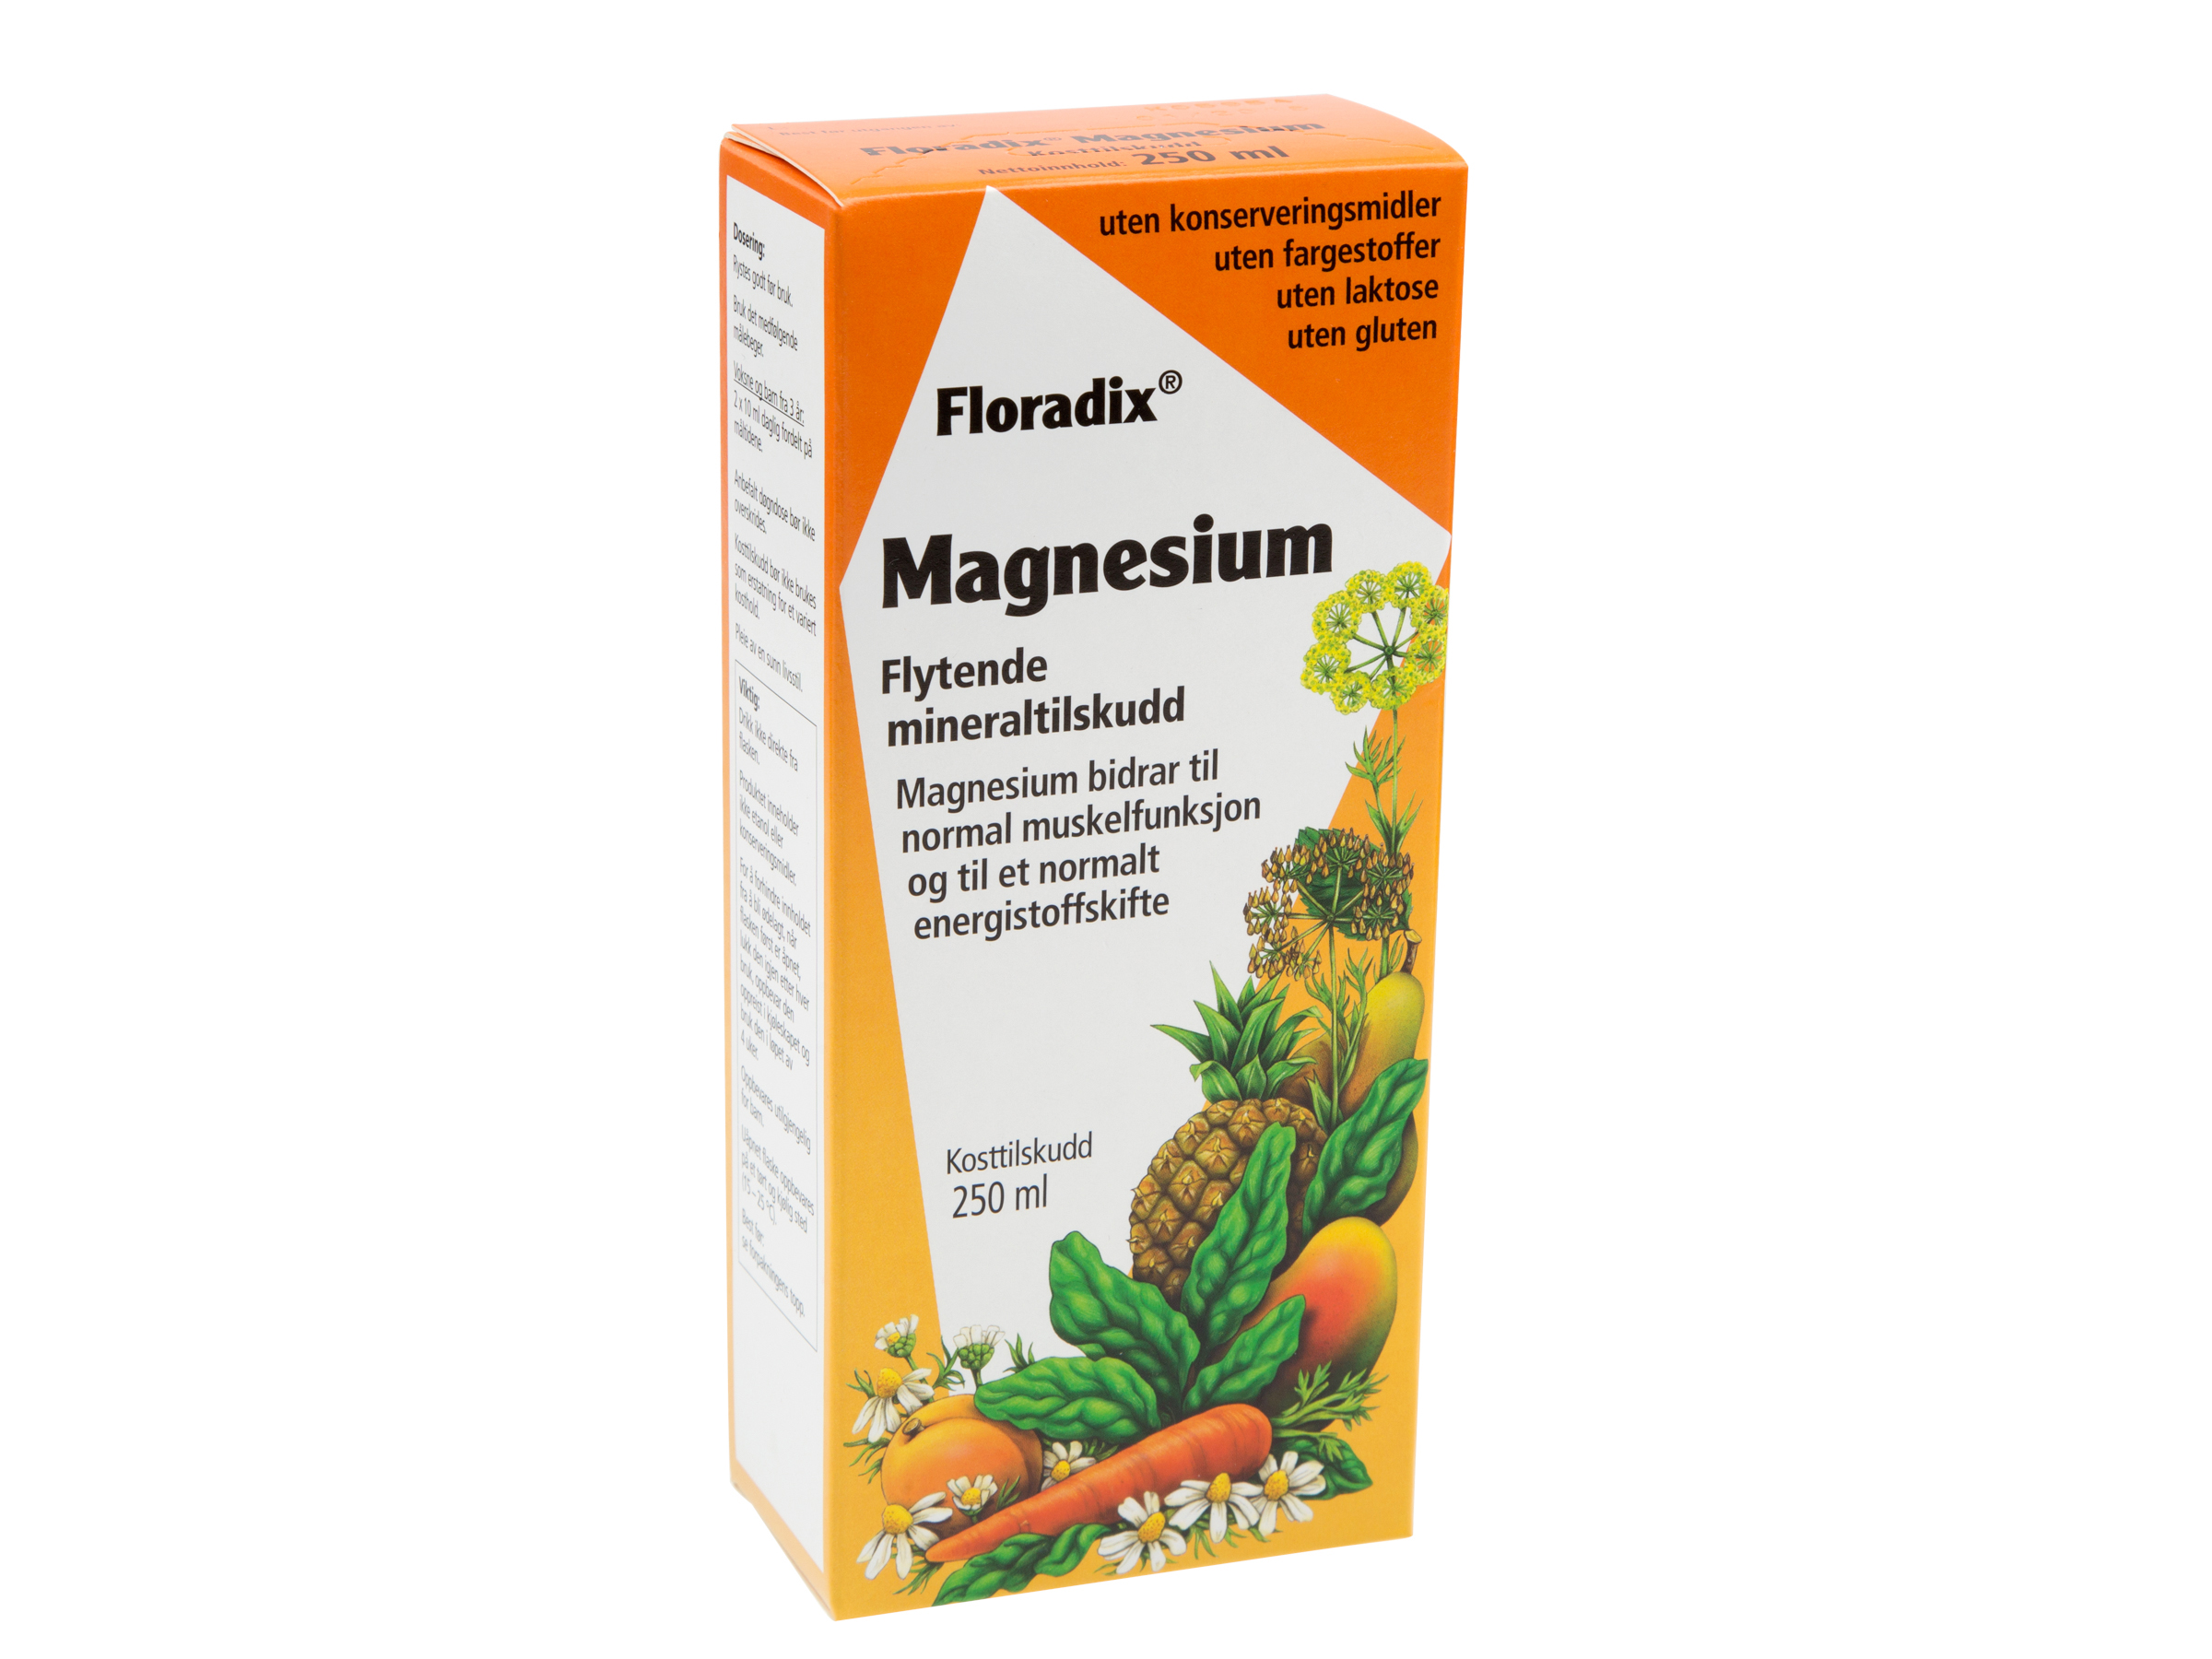 Floradix Magnesium Flytende, 250 ml